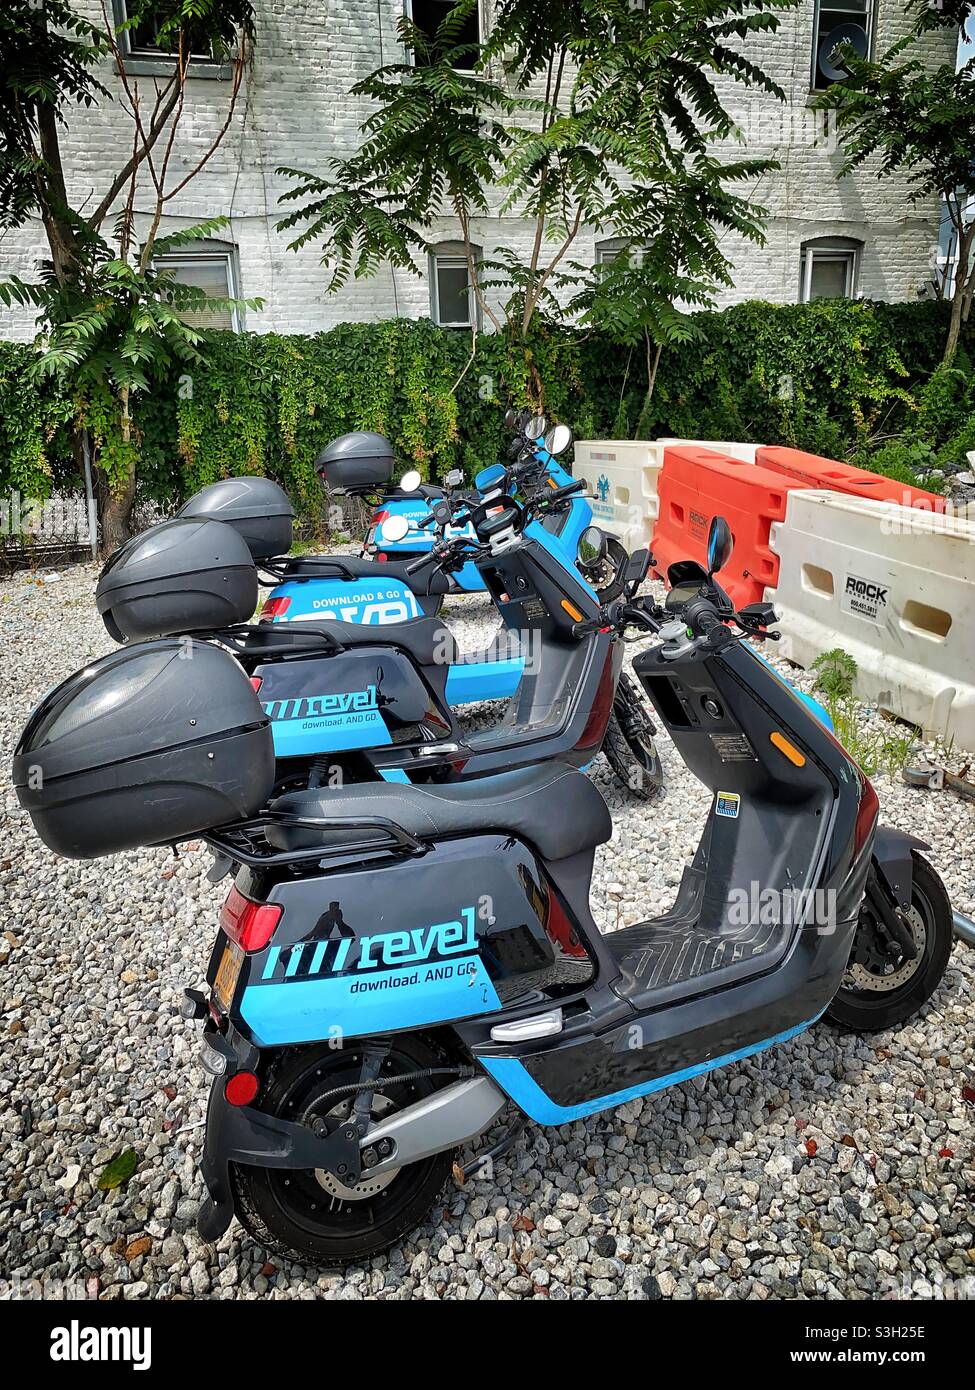 Les scooters Revel sont vus dans un parking à Queens NY. Banque D'Images